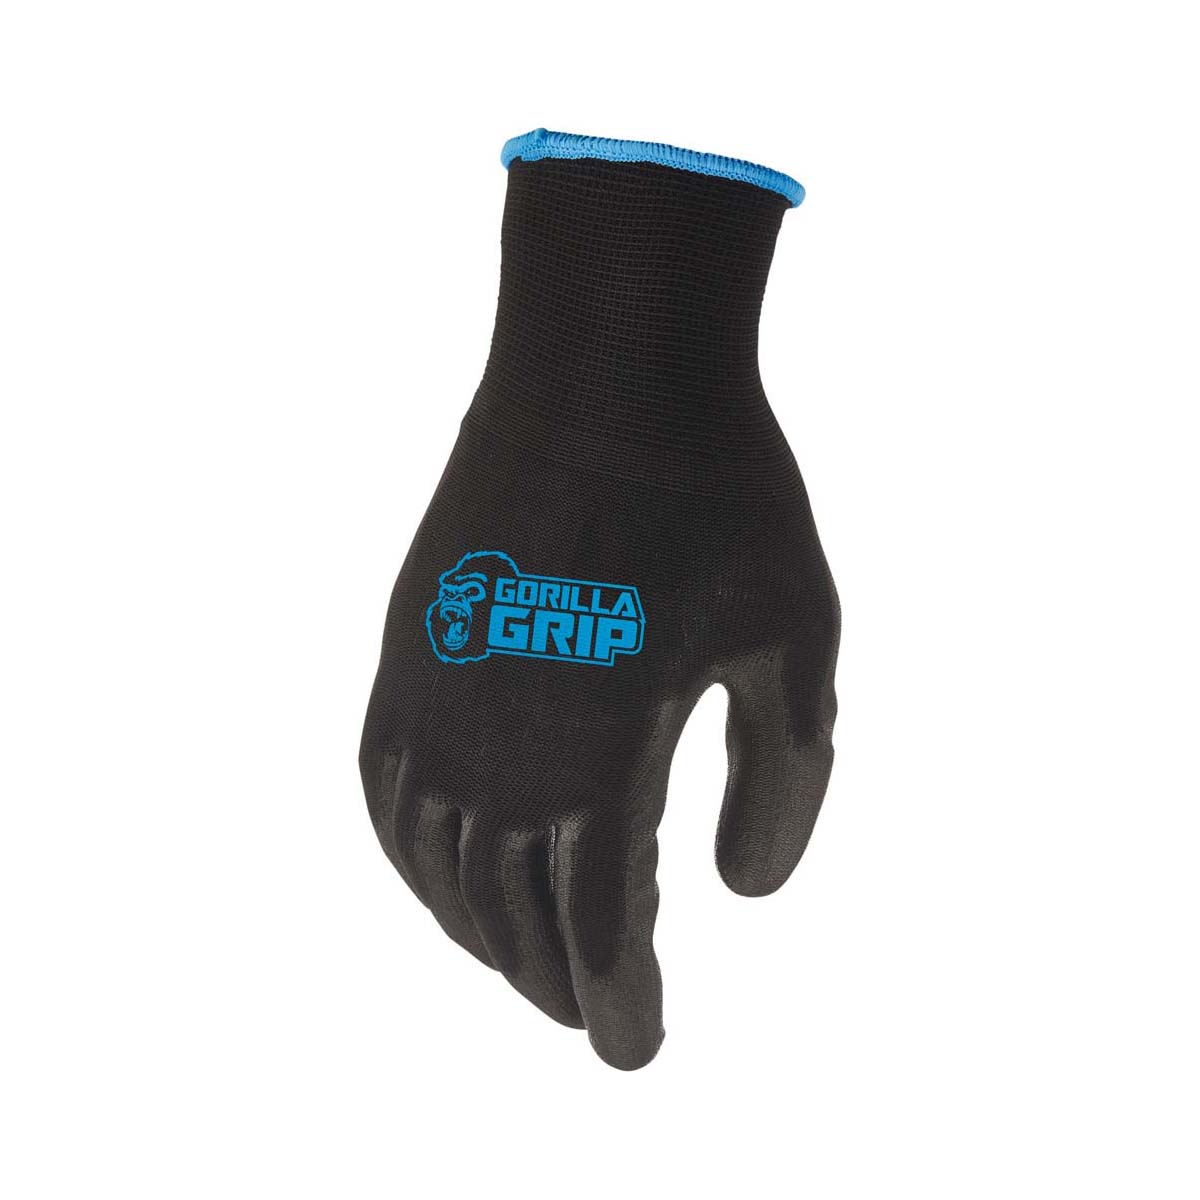 afl grip gloves